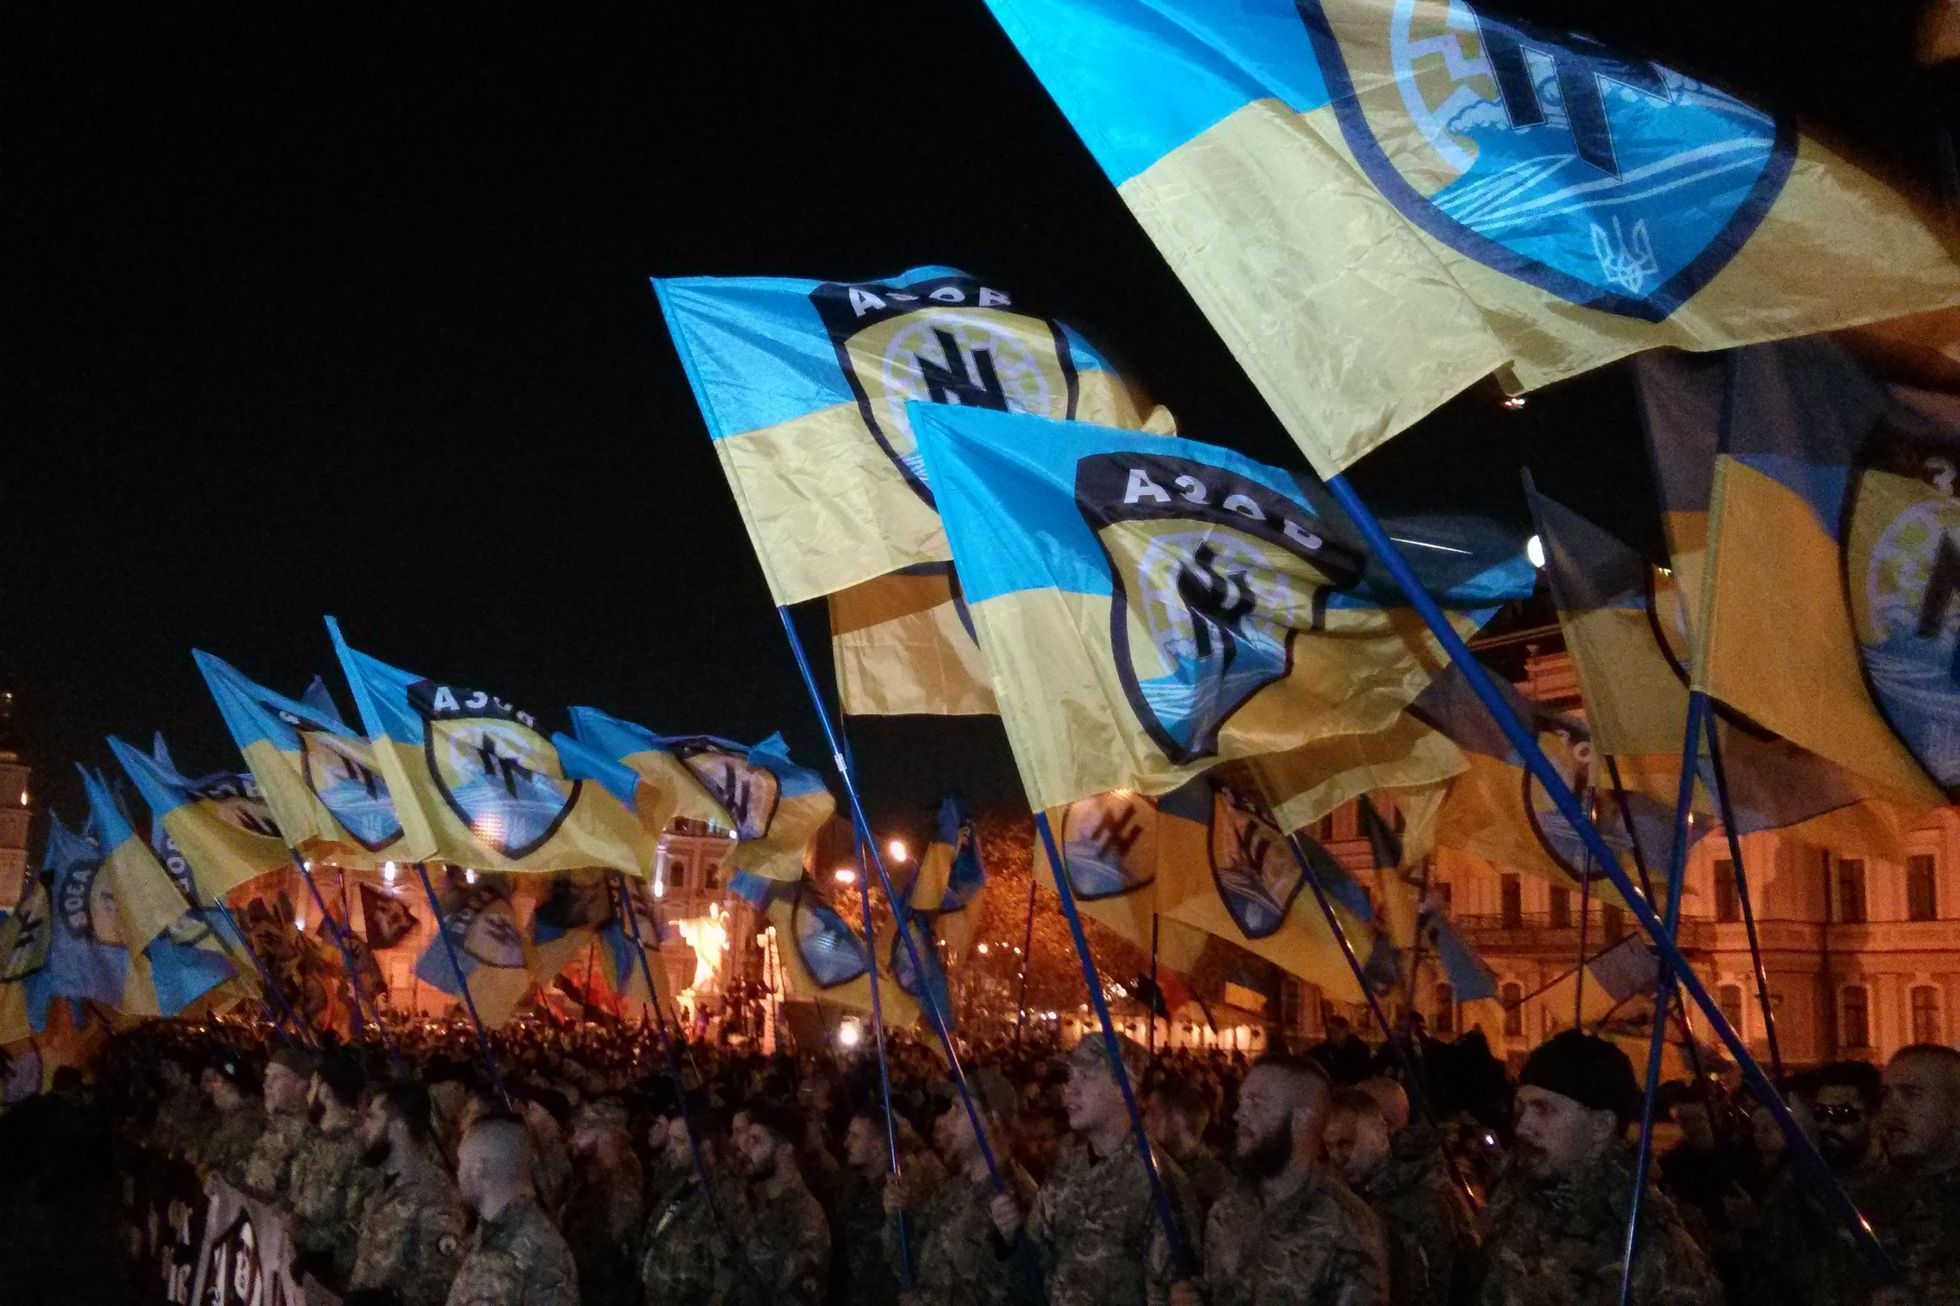 Ukrajinští nacionalisté - dobrovolnický prapor Azov